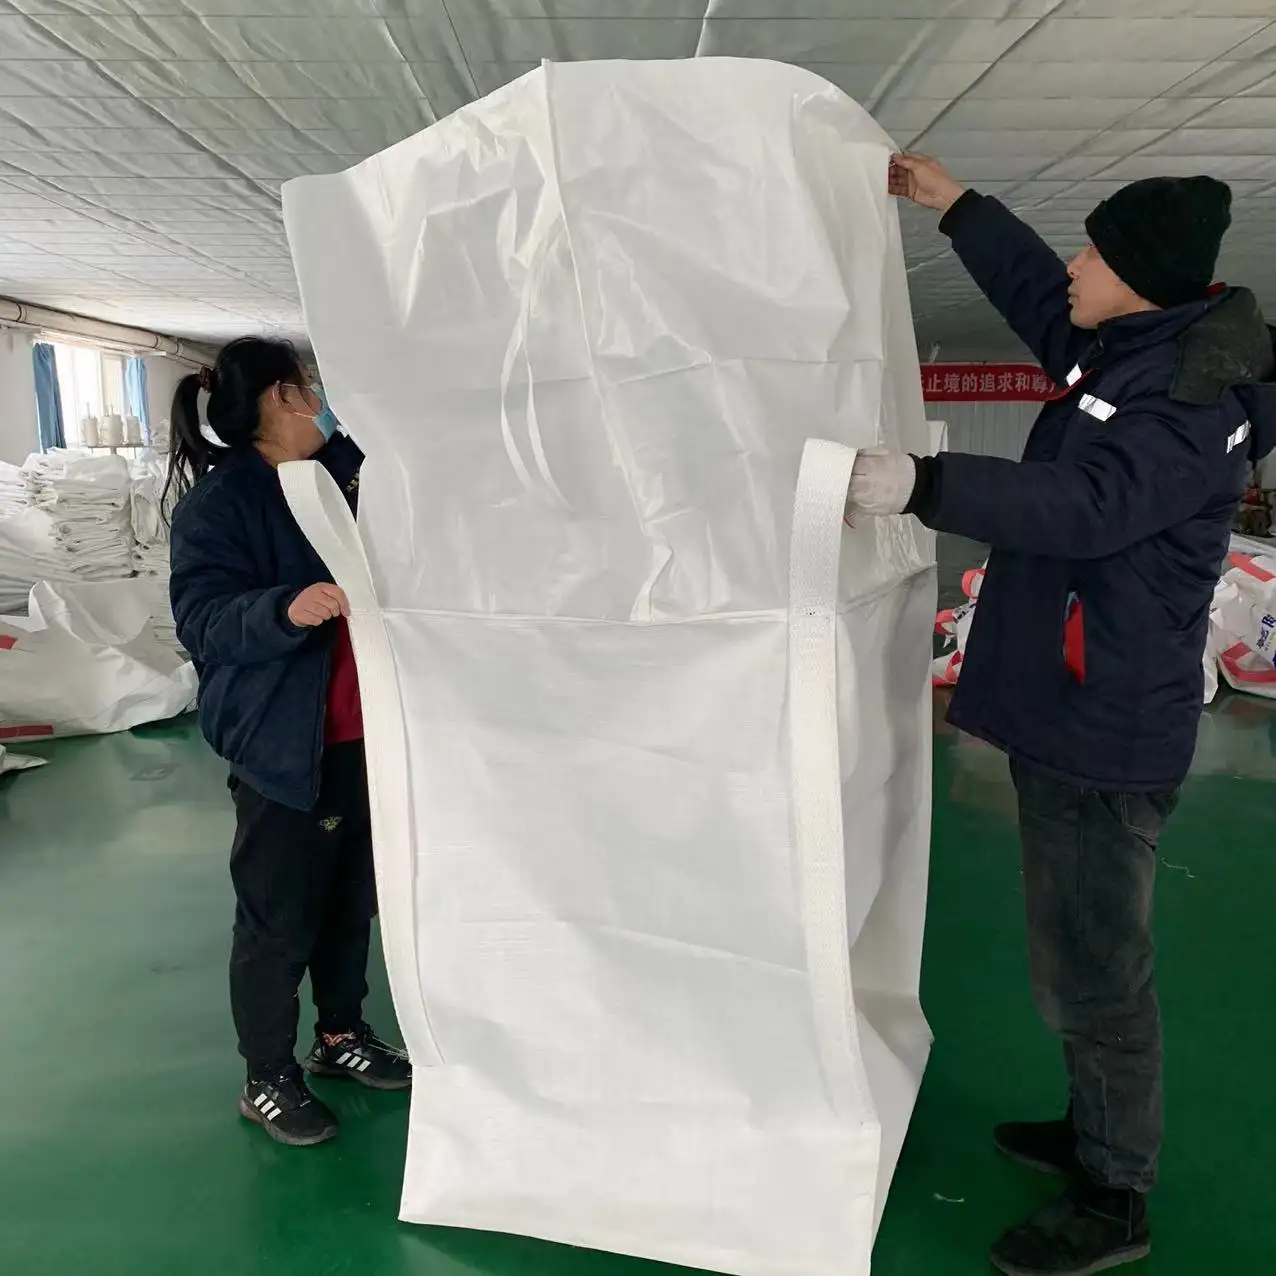 Hesheng saco grande de plástico para venda, saco grande de 2 toneladas, saco grande de plástico grande com embalagem personalizada, saco grande de descarga de grande volume de 2.000kg, saco grande de plástico para uso comercial